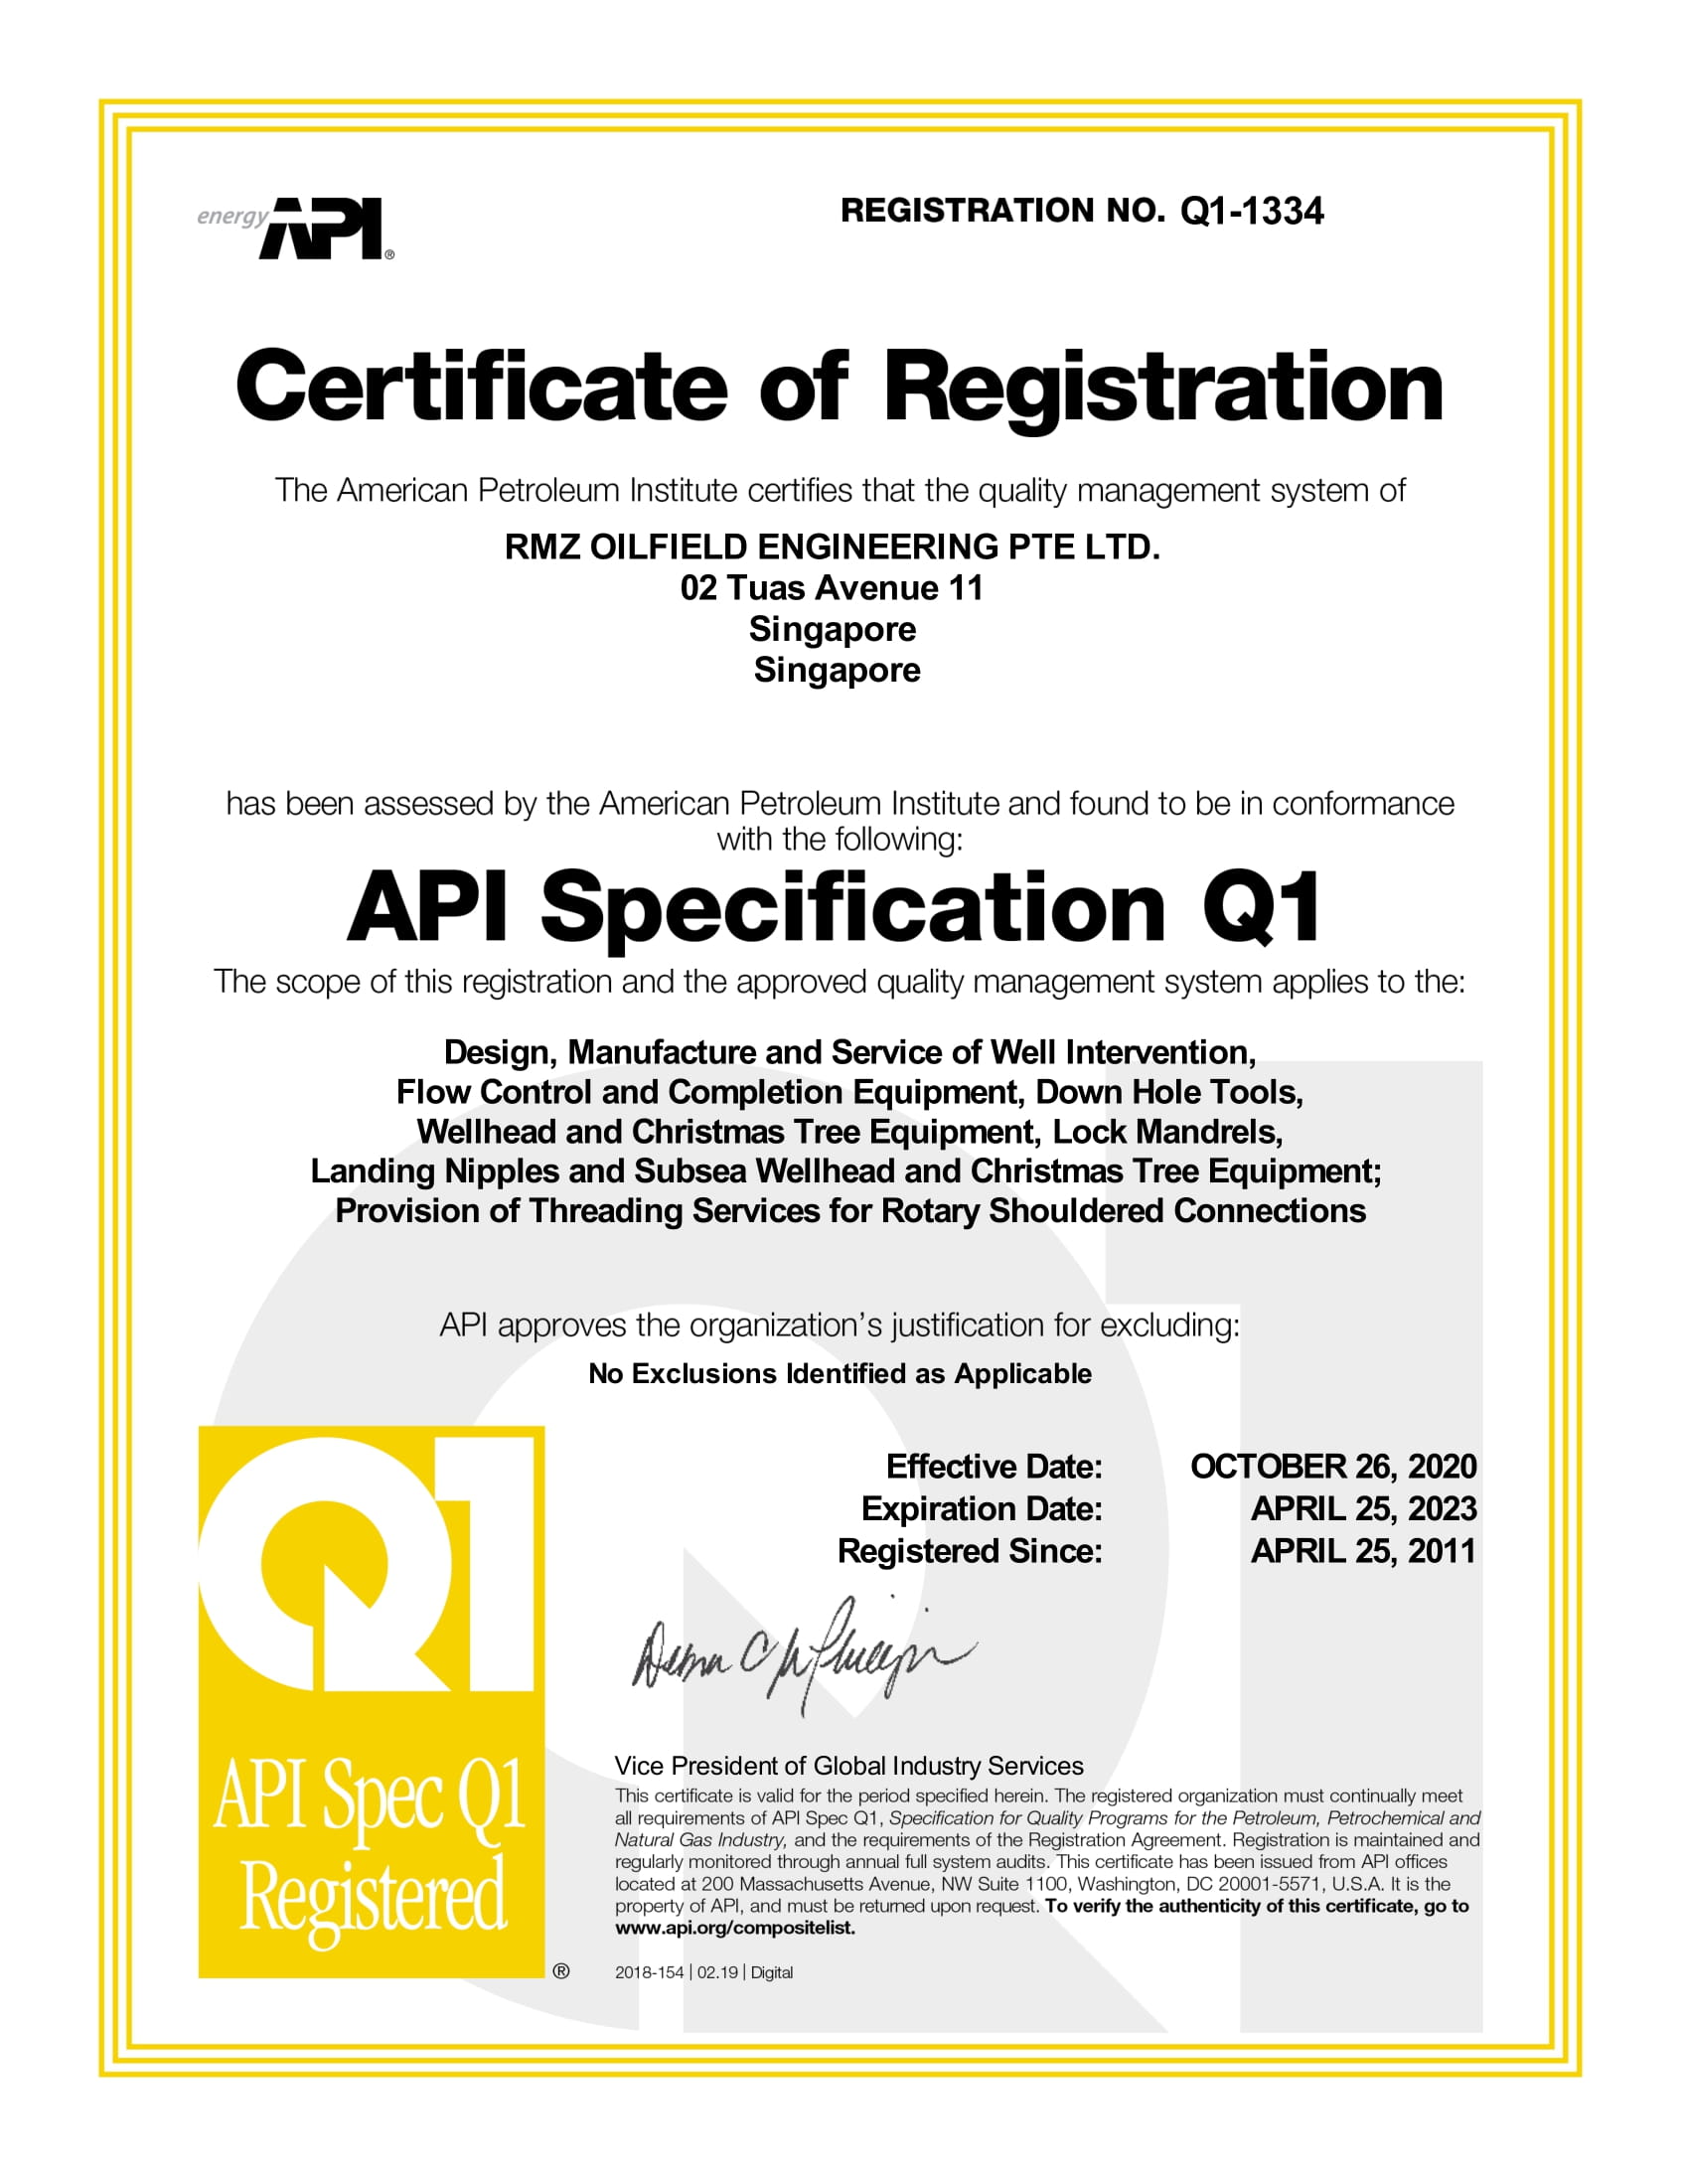 API SPEC Q1